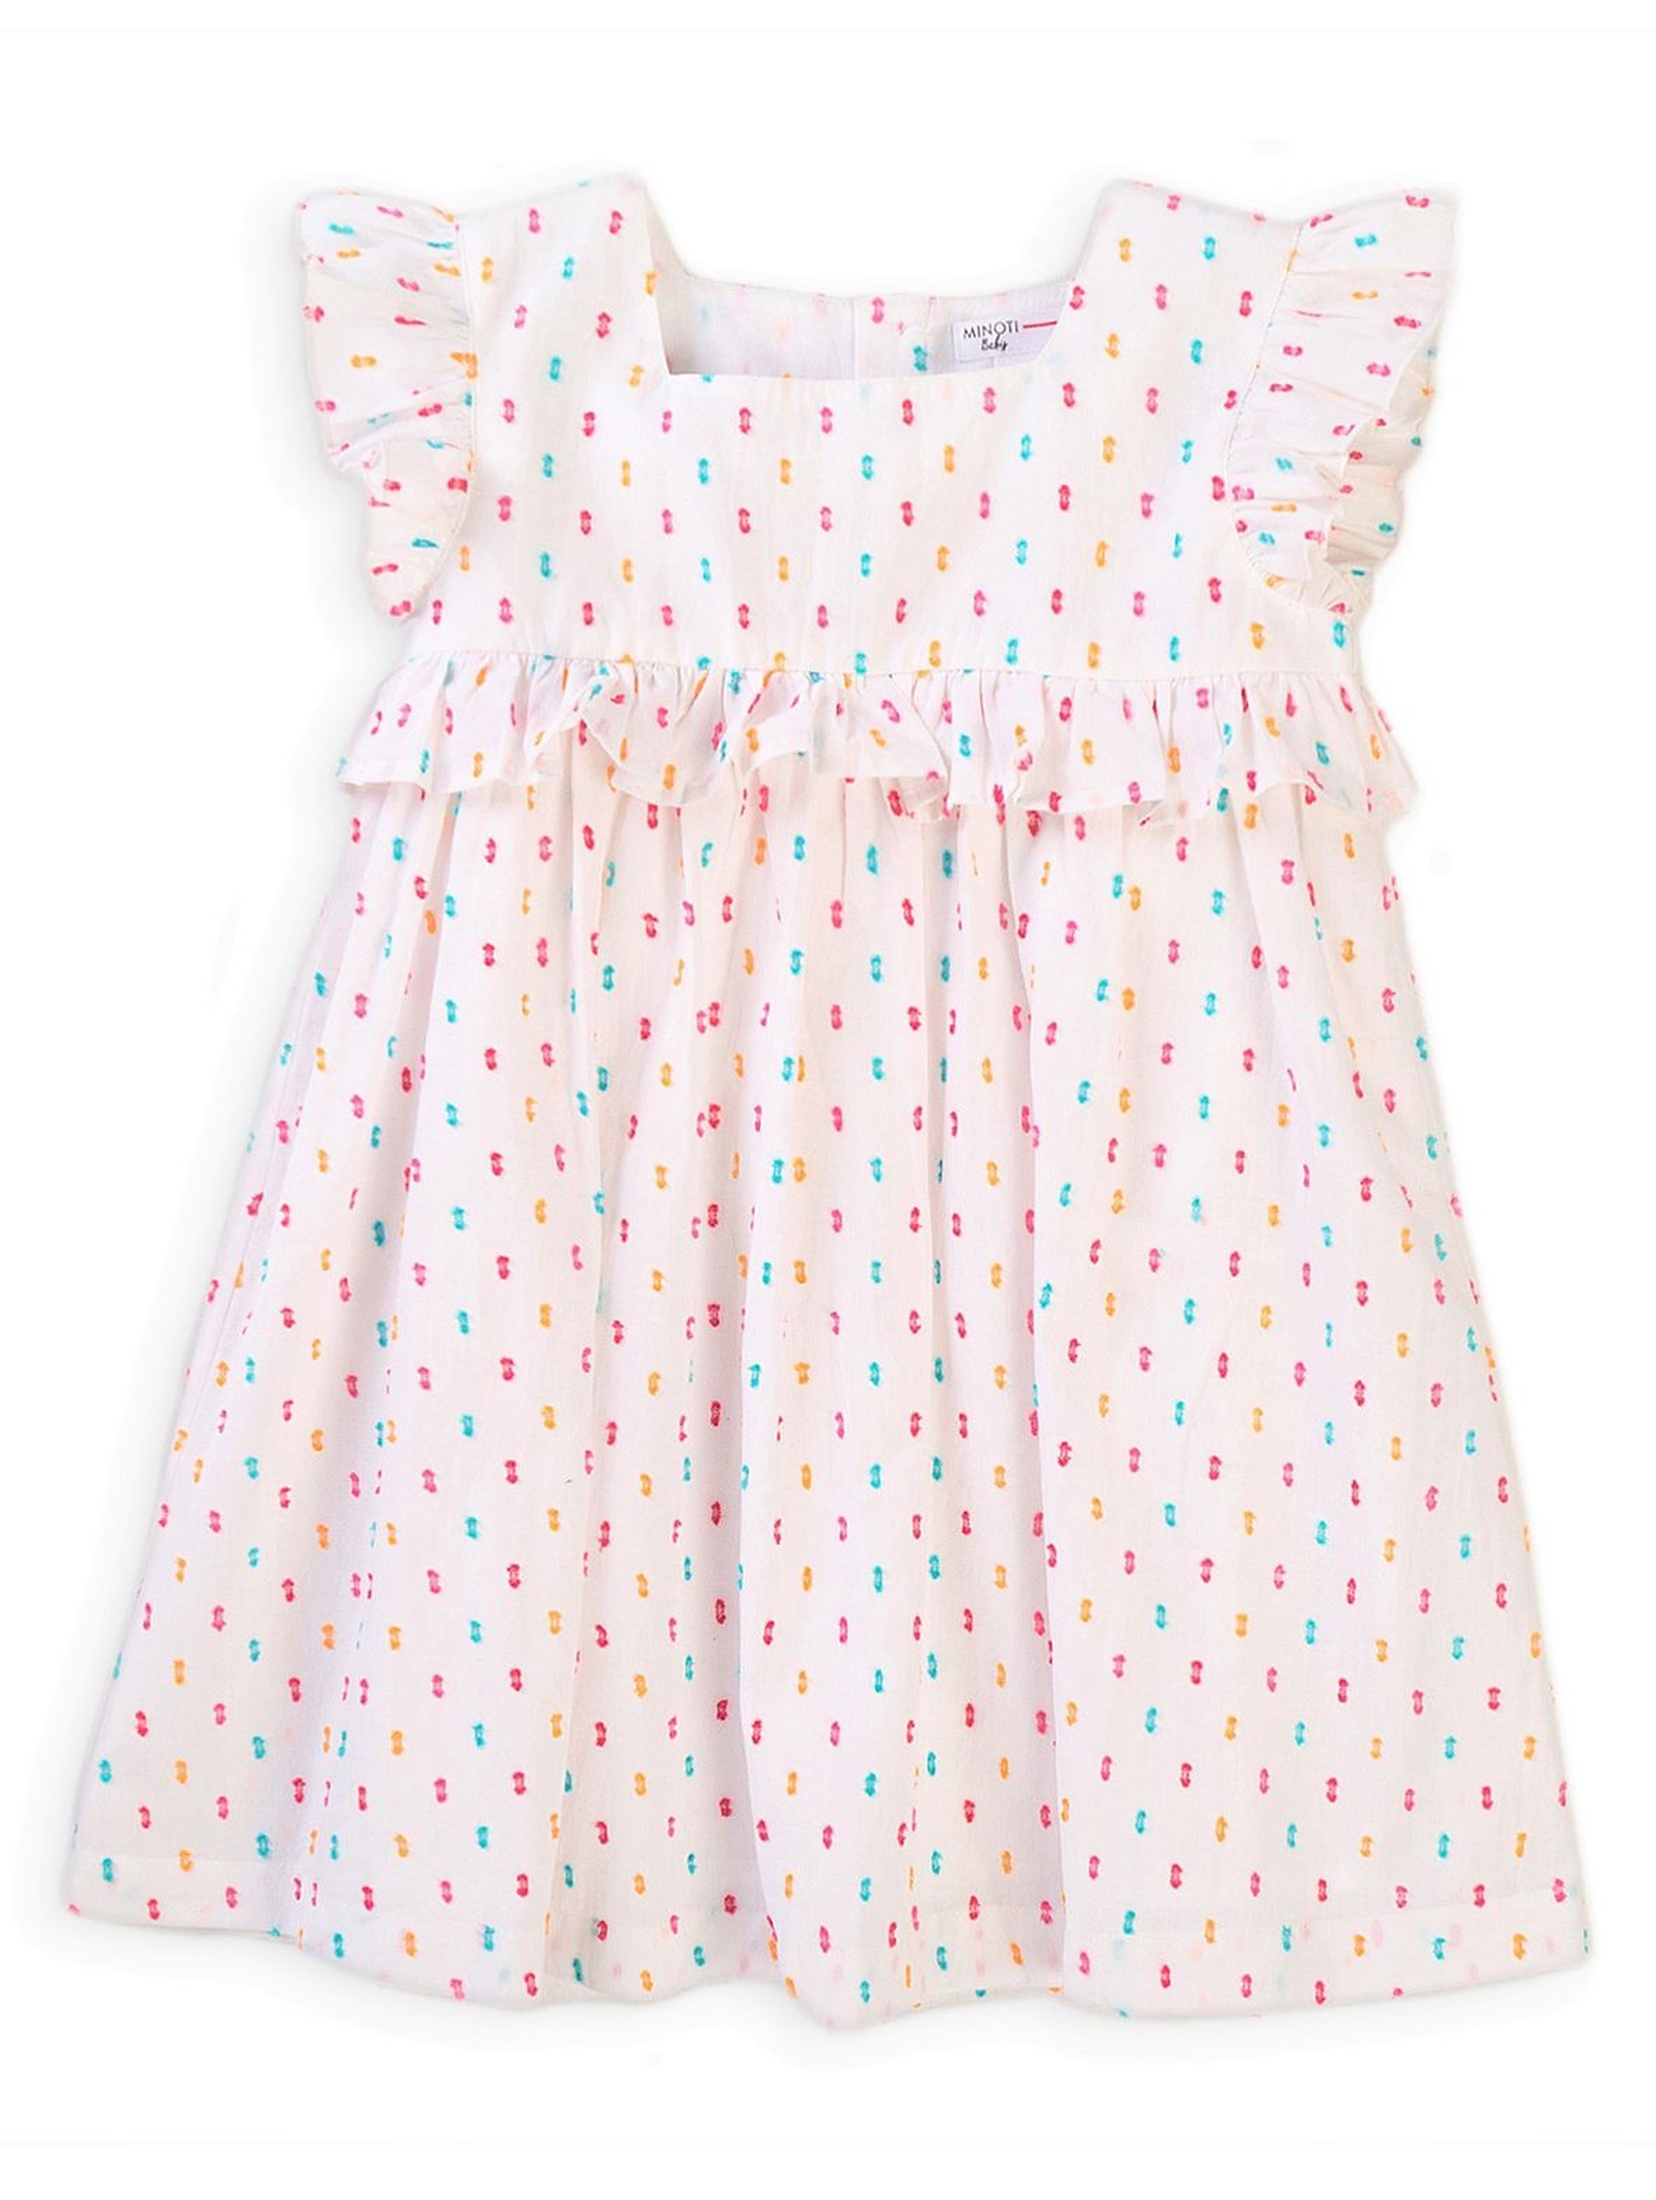 Bawełniana sukienka niemowlęca biała w kolorowe wzorki